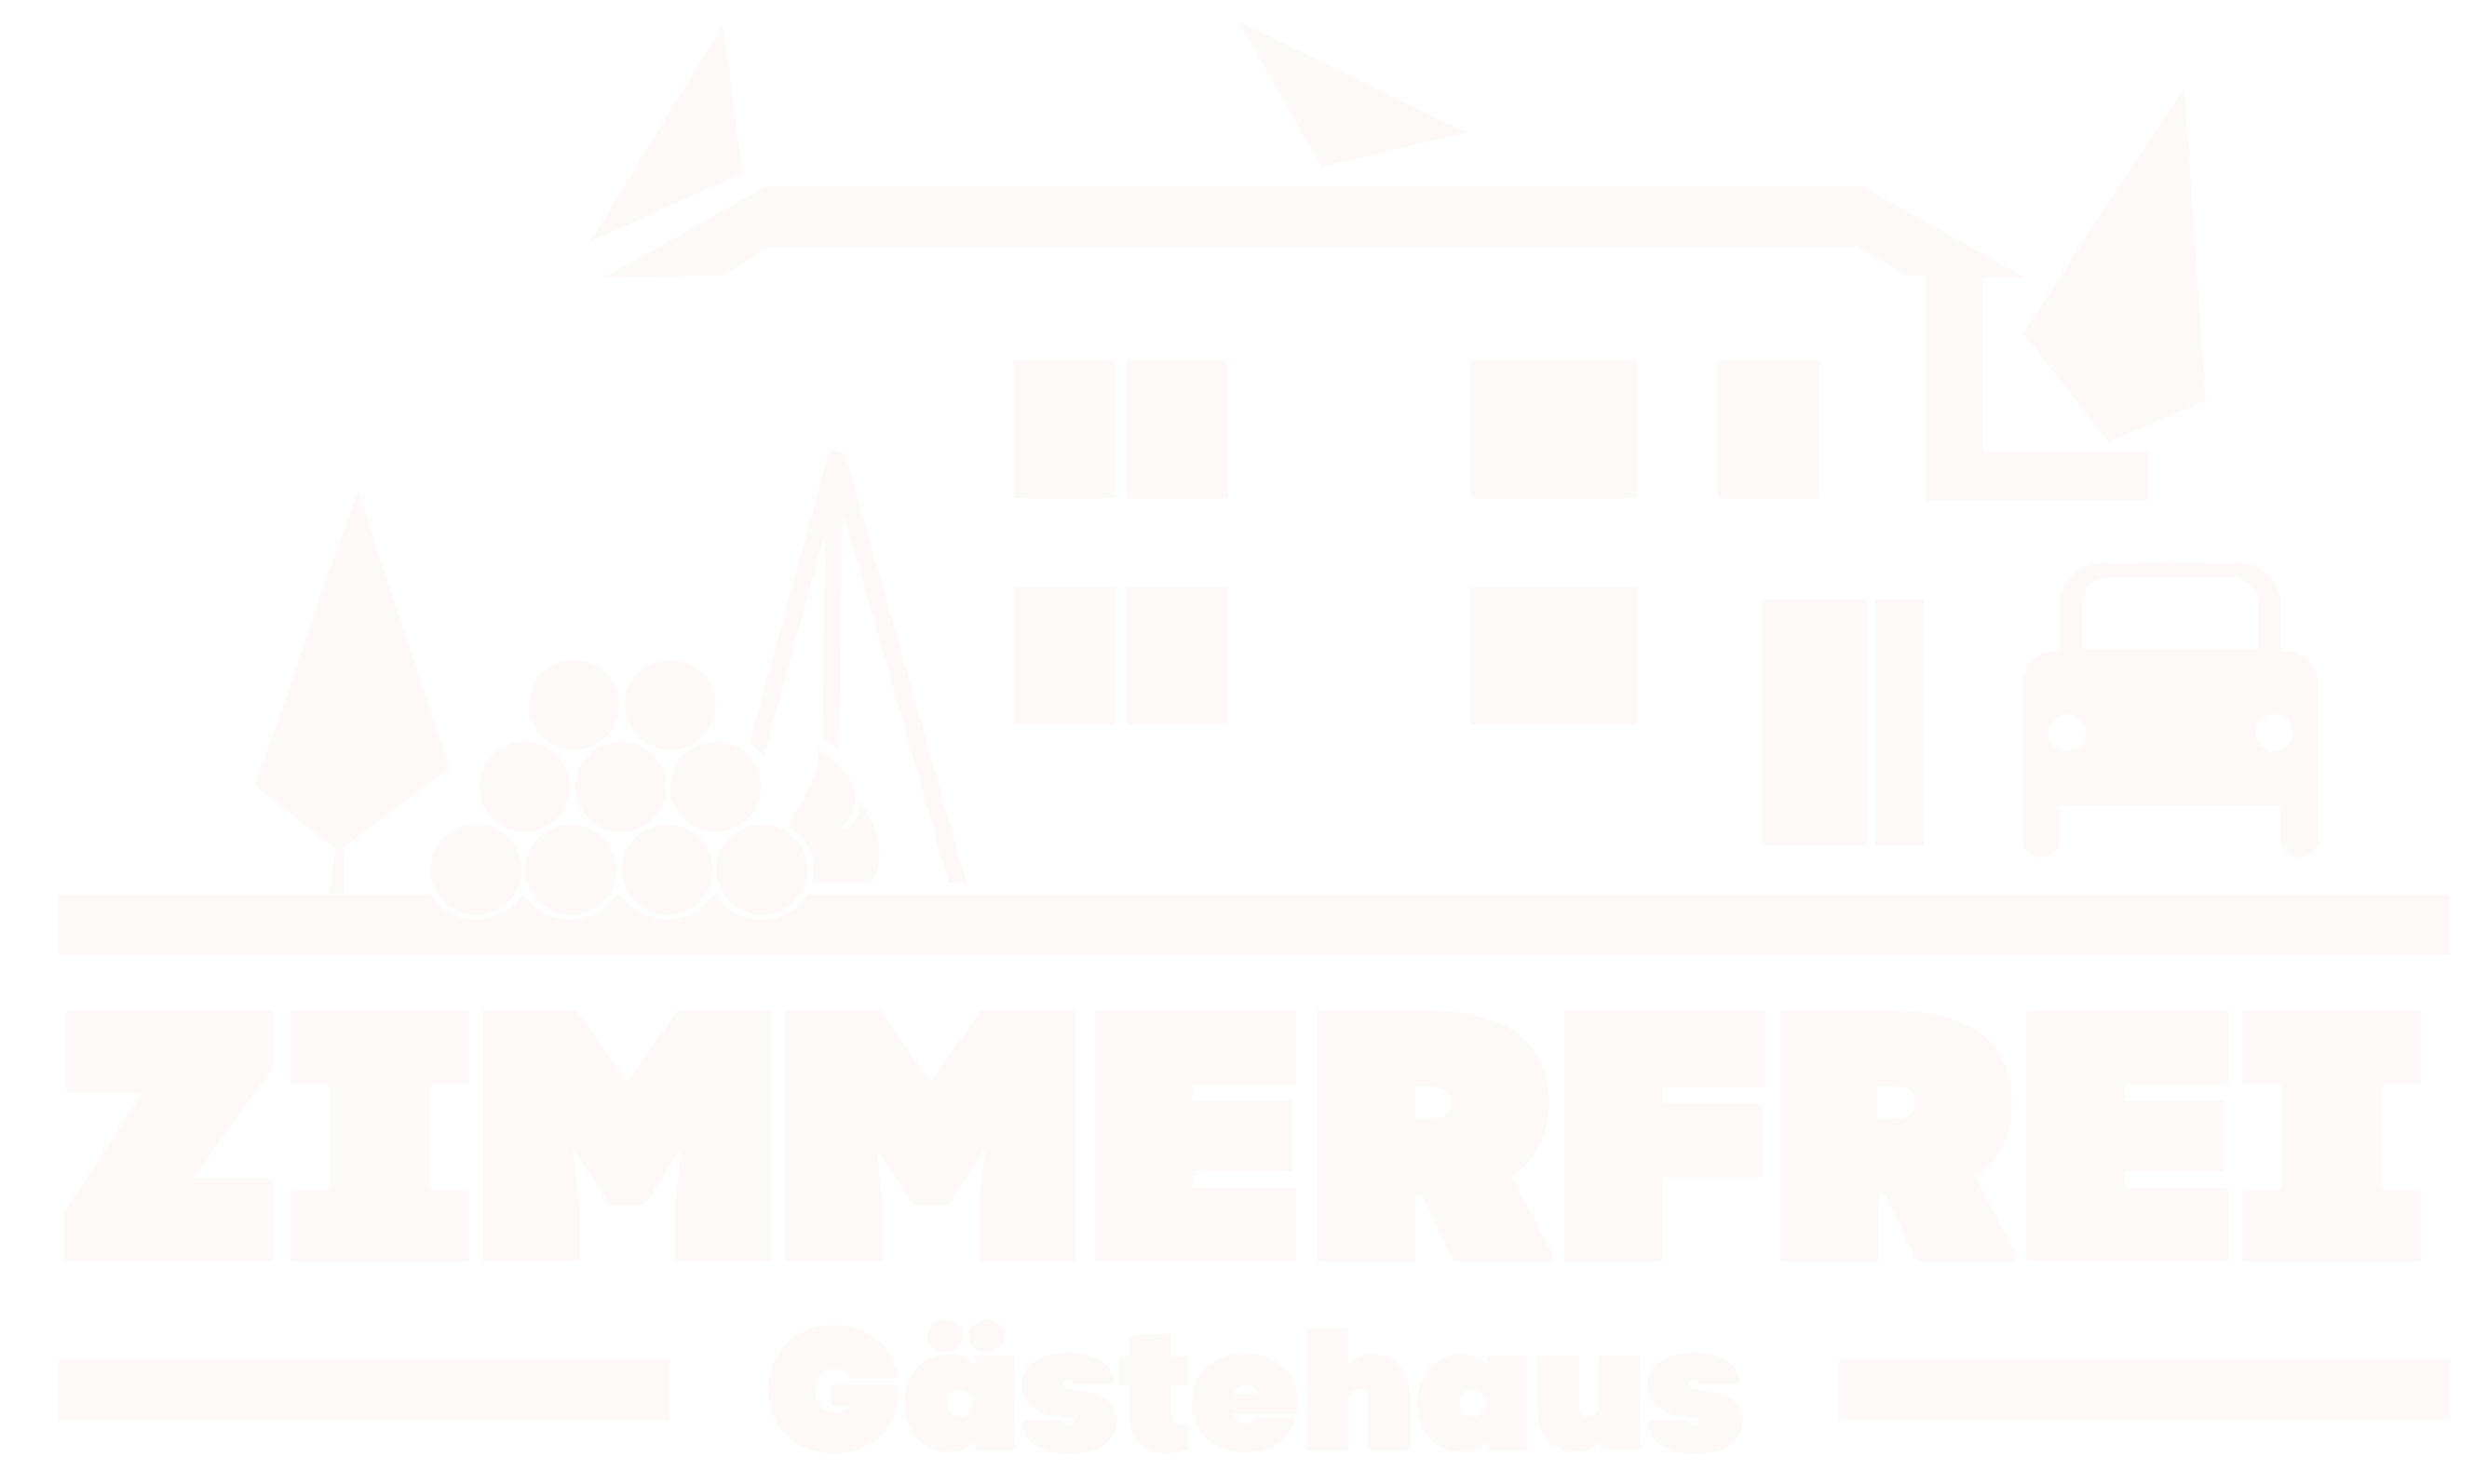 Gästehaus Zimmer Frei, Logo, Symbol